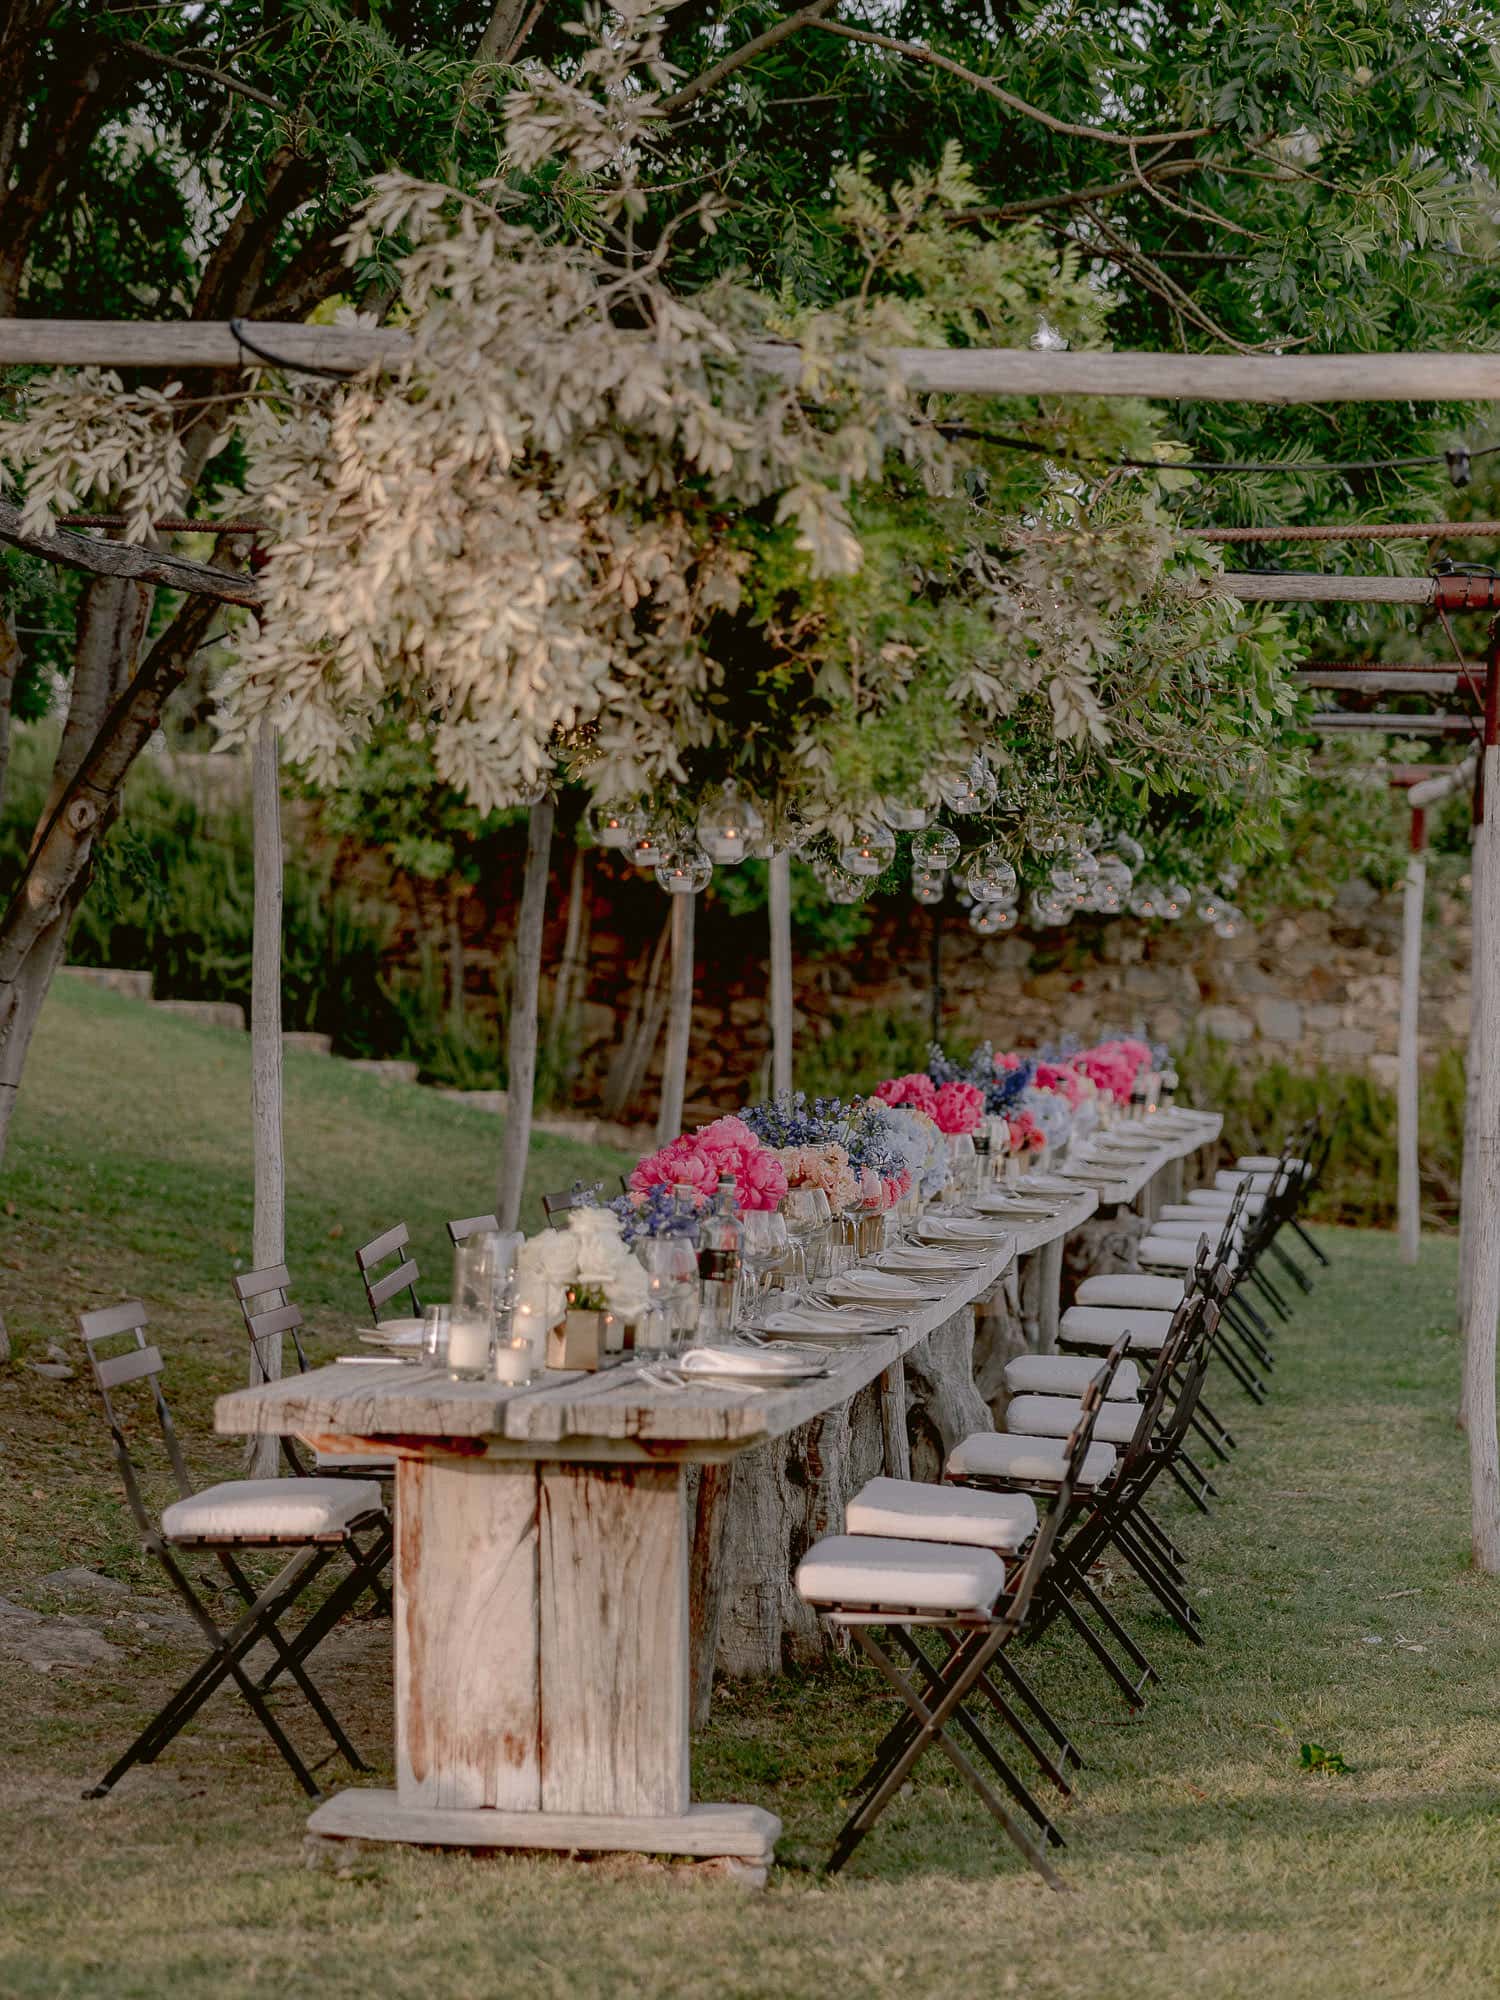 table setting for wedding reception at castello di Vicarello